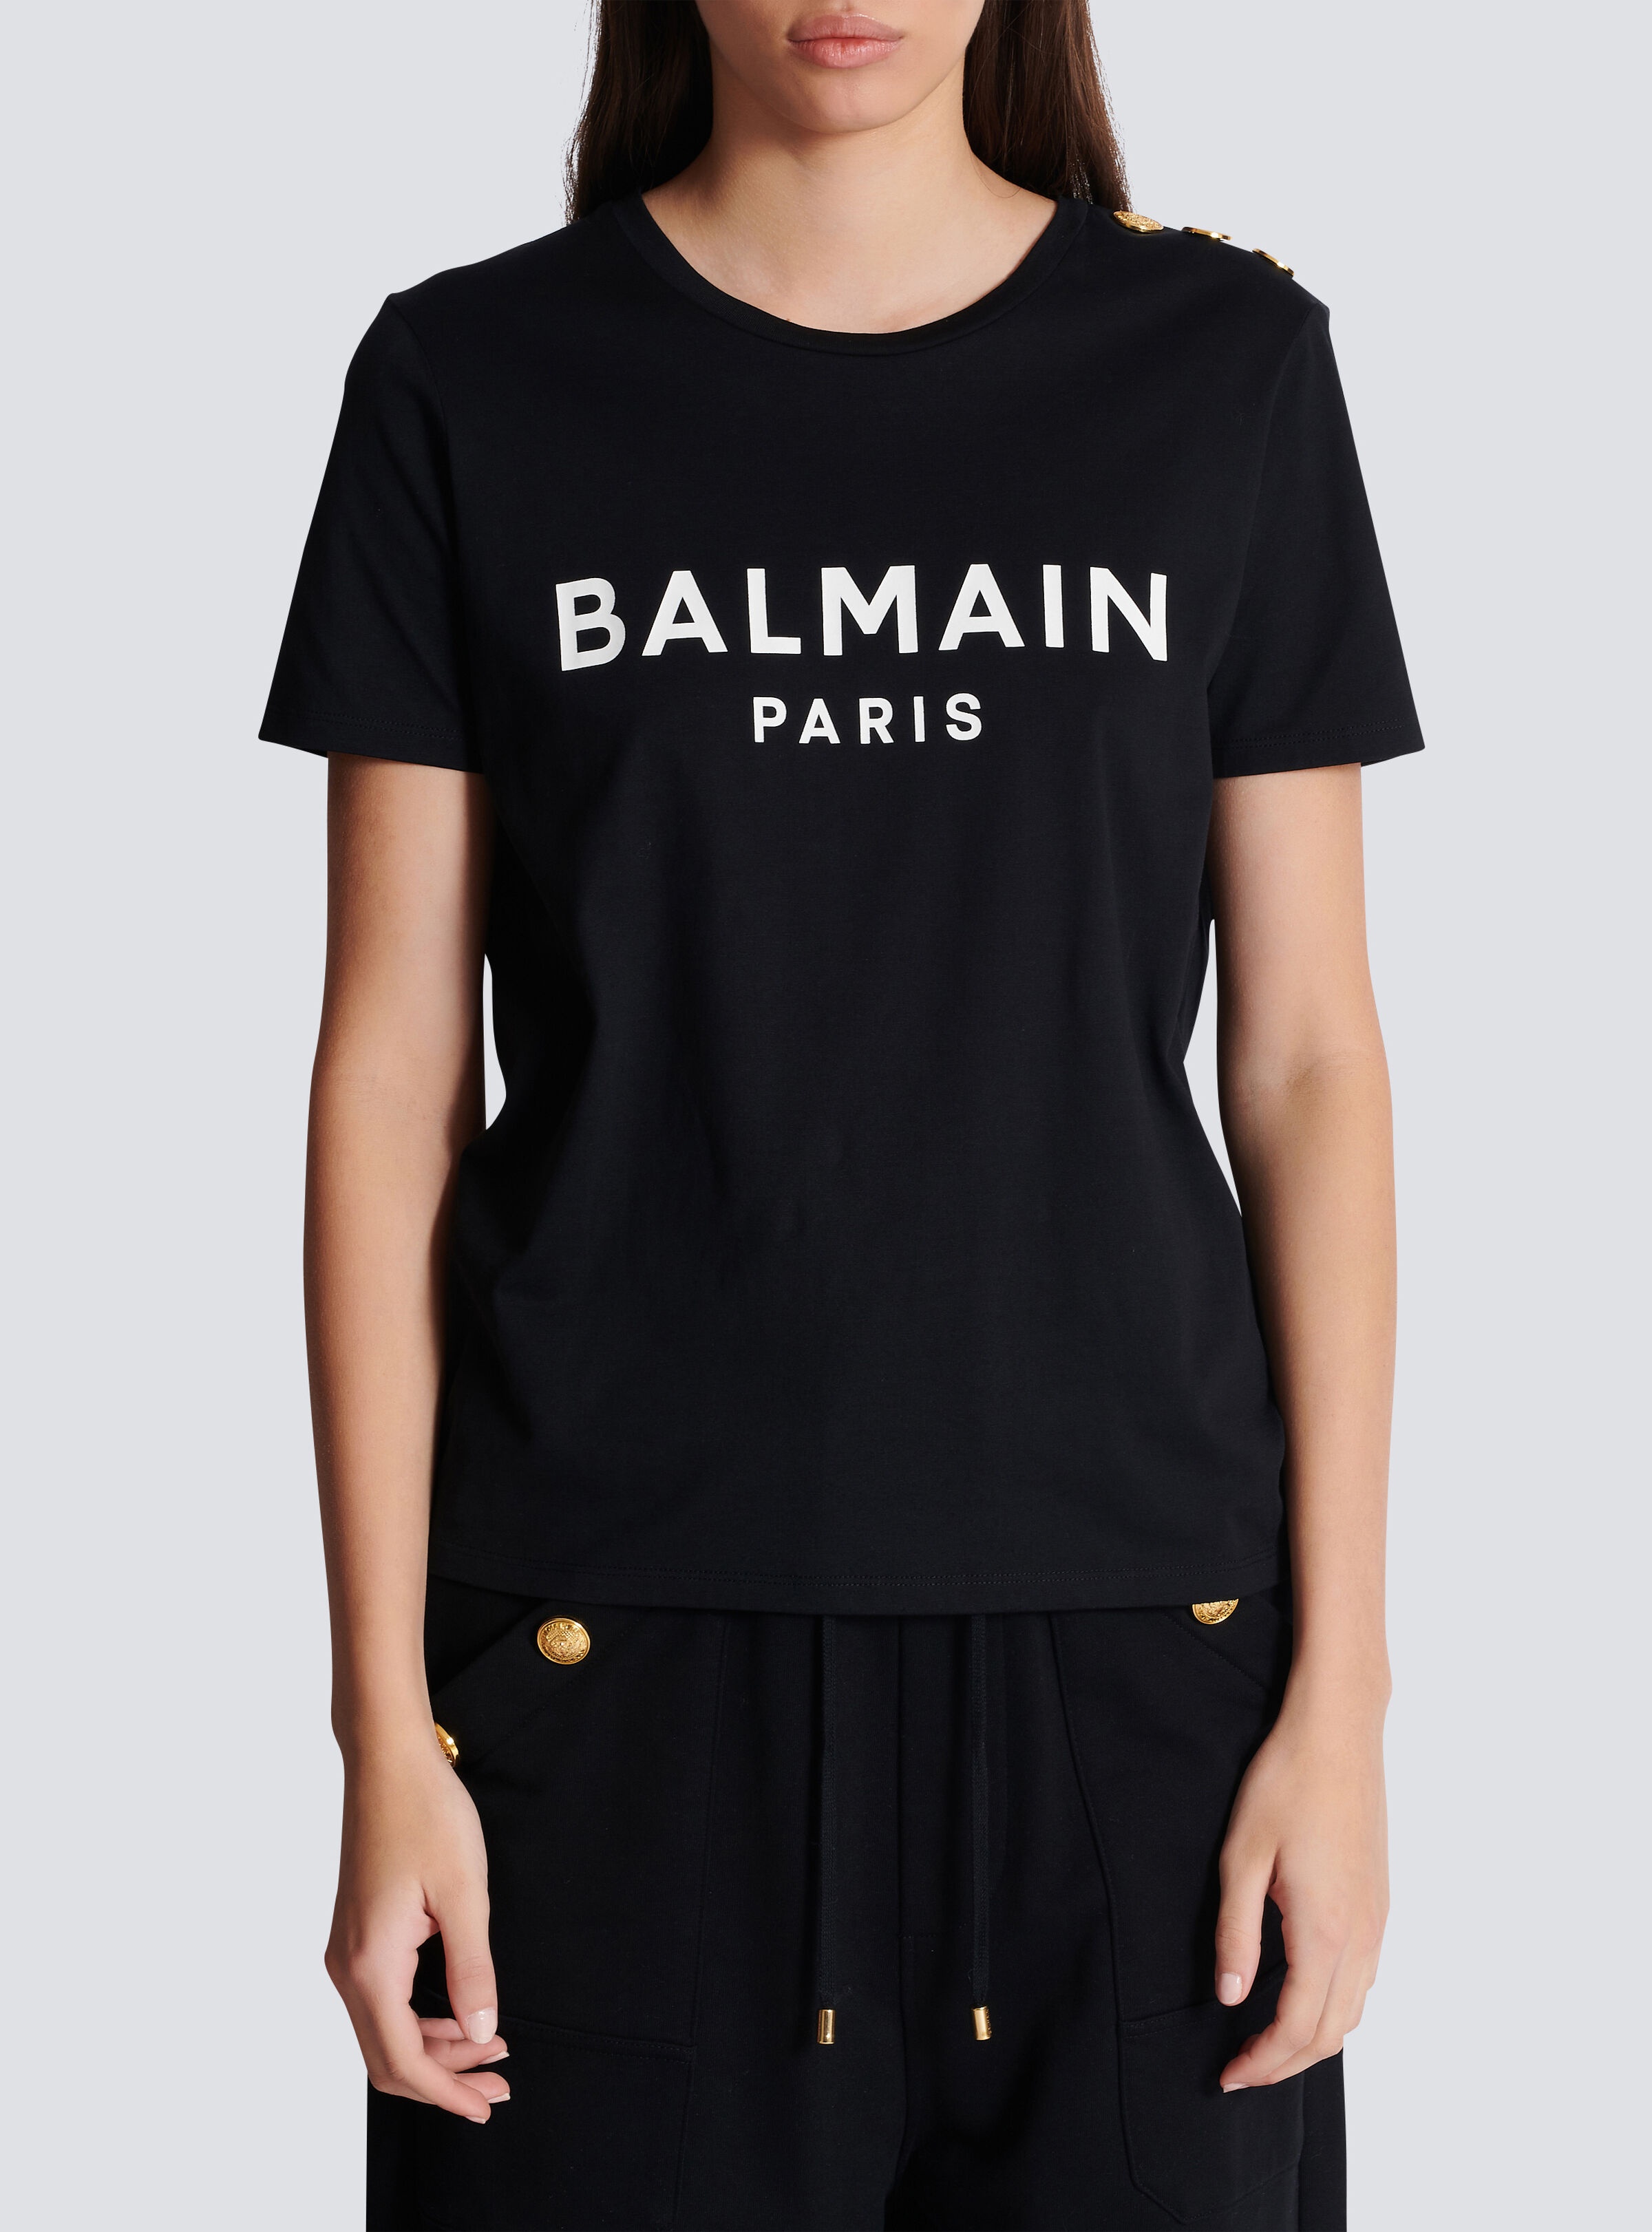 T-shirt with Balmain Paris print - 5